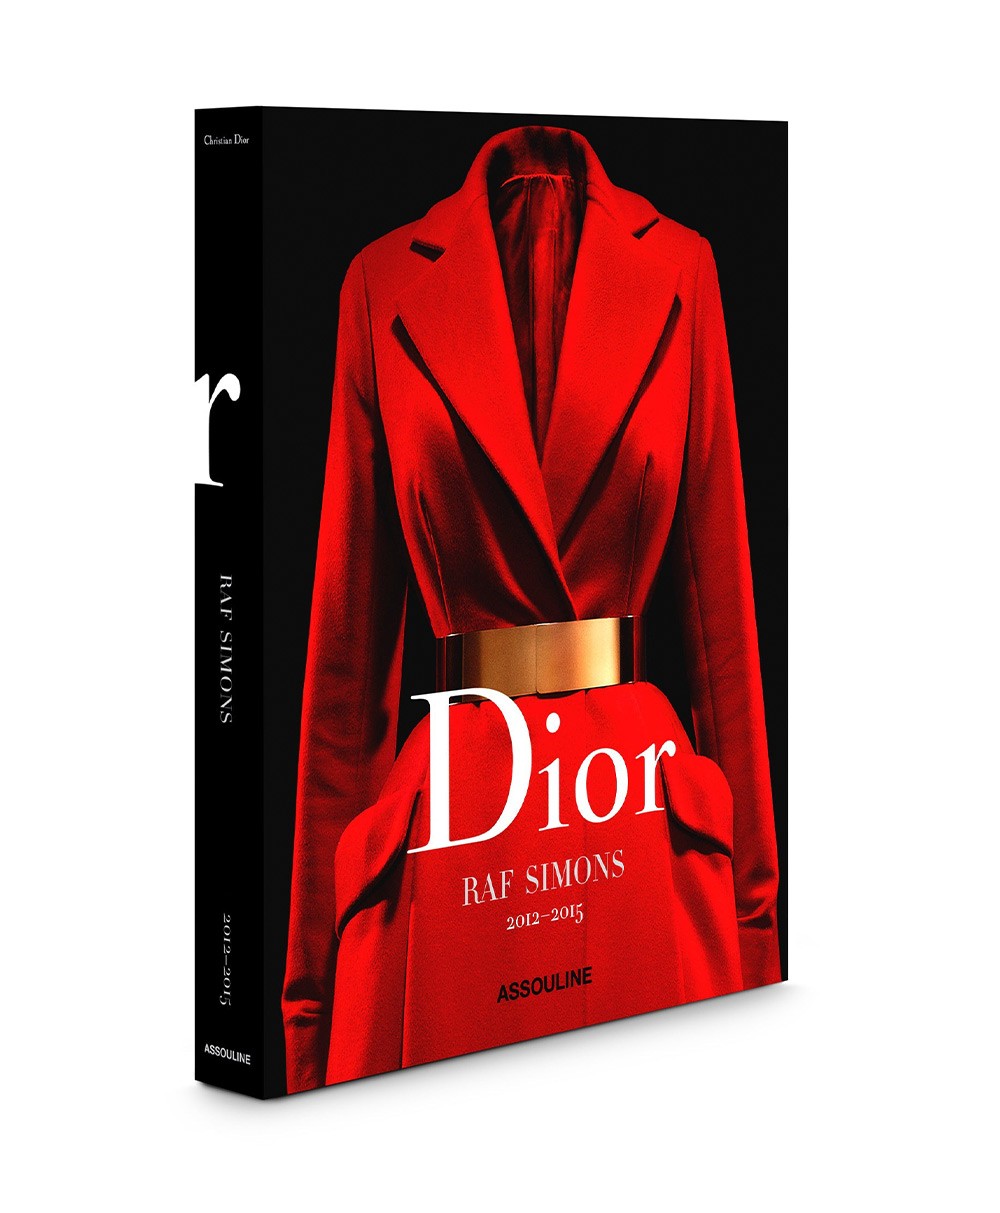 Coverbild des Bildbands „Dior by Raf Simons“  von Assouline im RAUM concept store 